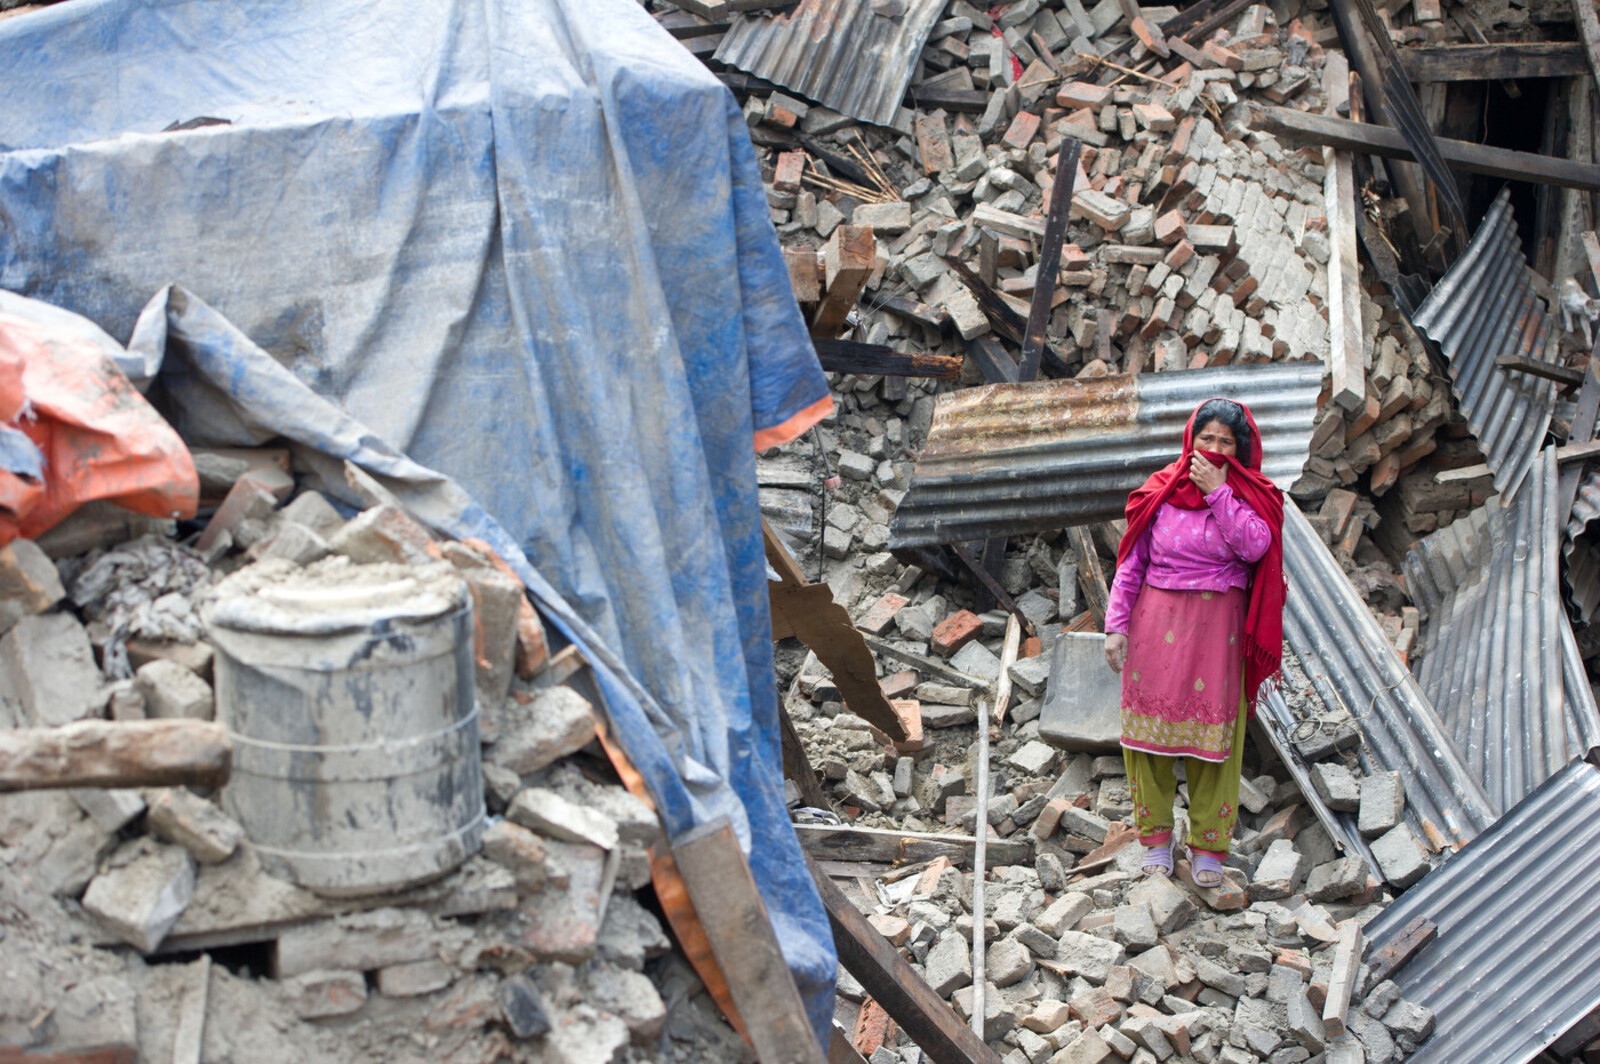 Nach dem Erdbeben in Nepal ist die Zerstörung groß. Eine Frau steht in den Trümmern ihres Hauses.